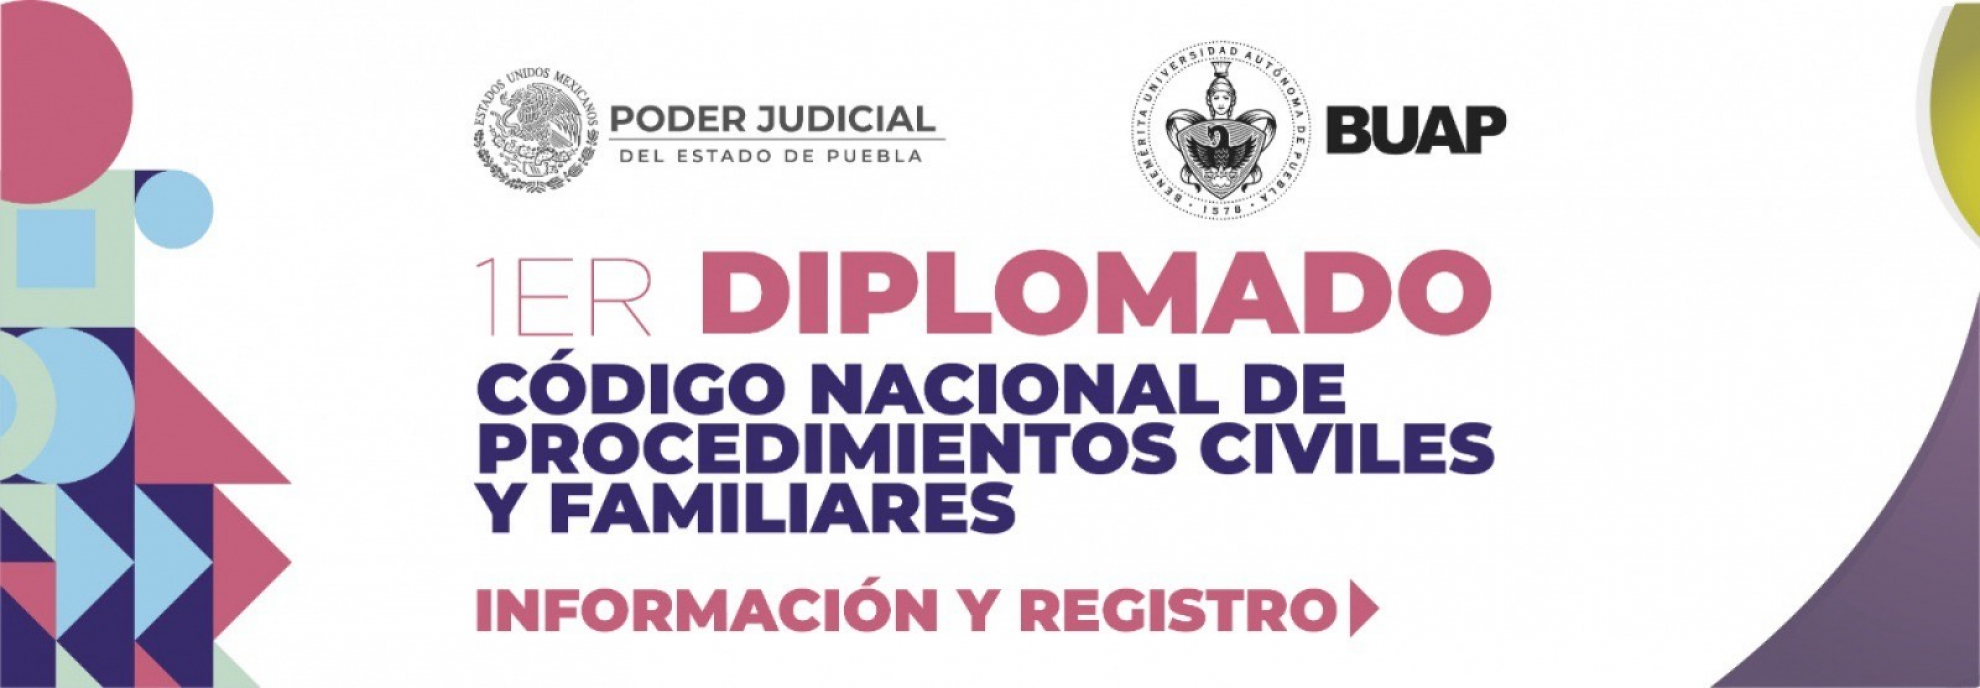 1Er Diplomado Código Nacional de Procedimientos Civiles y Familiares